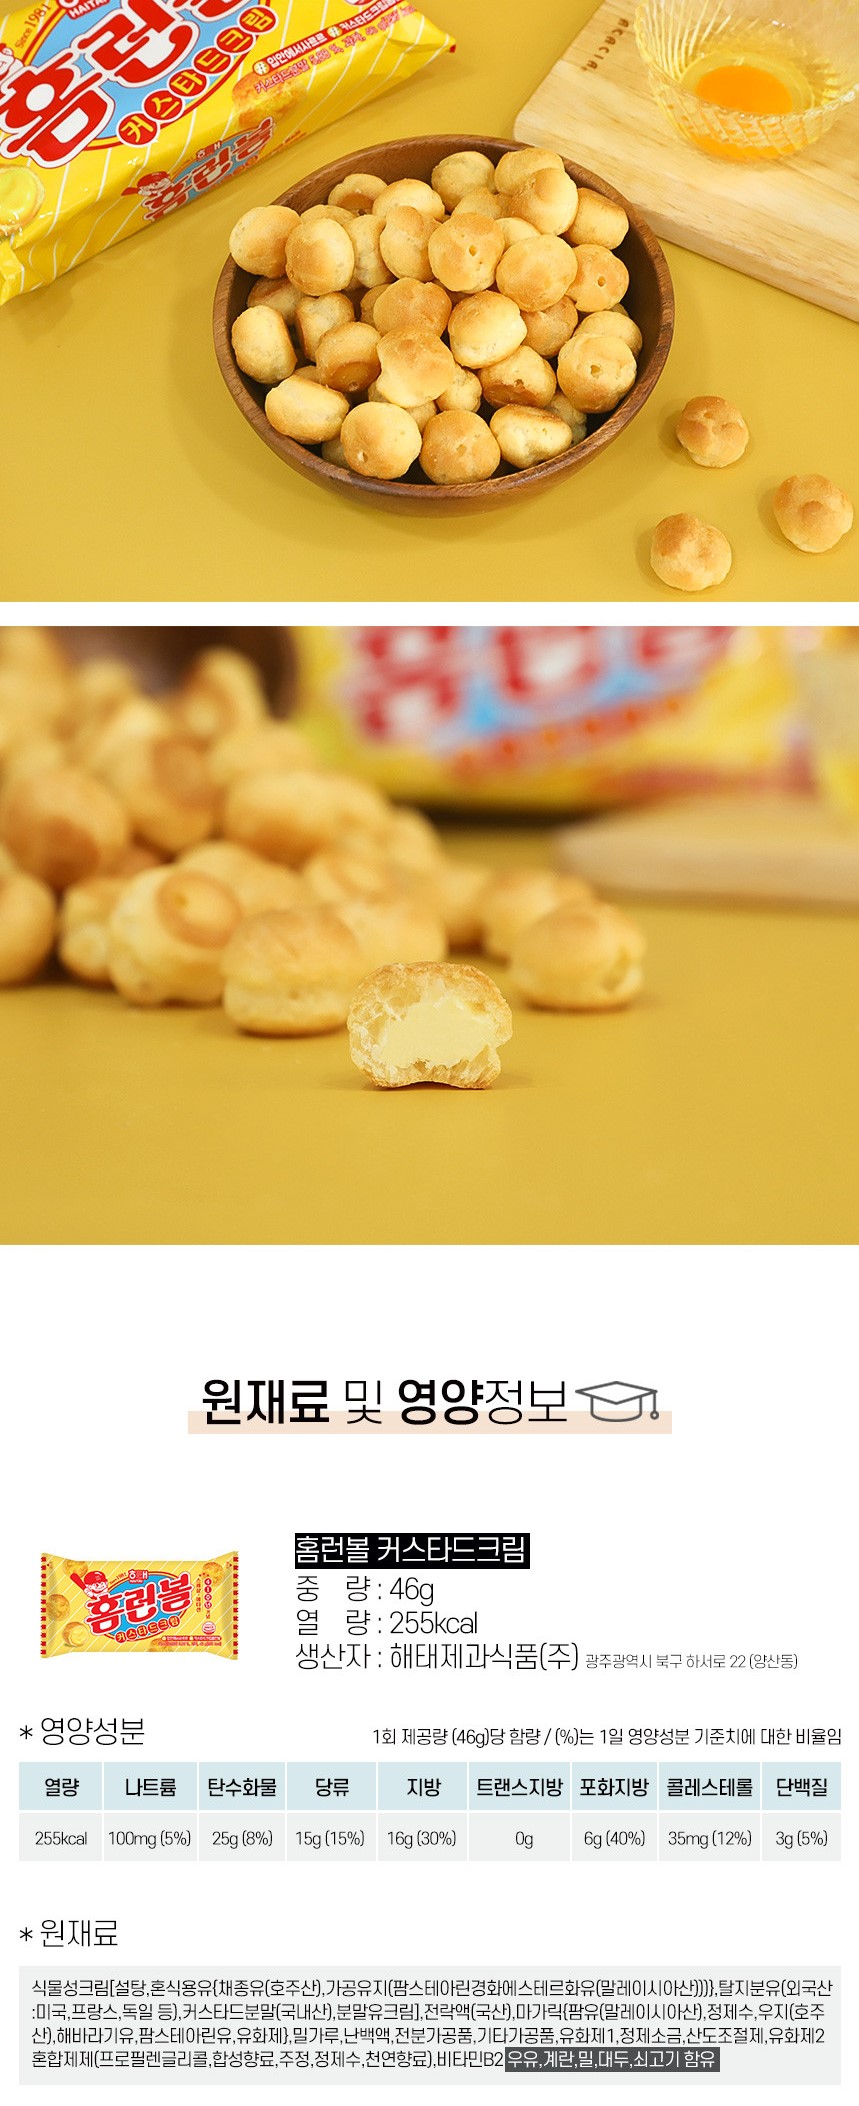 韓國食品-[해태] 홈런볼 커스타드크림 46g